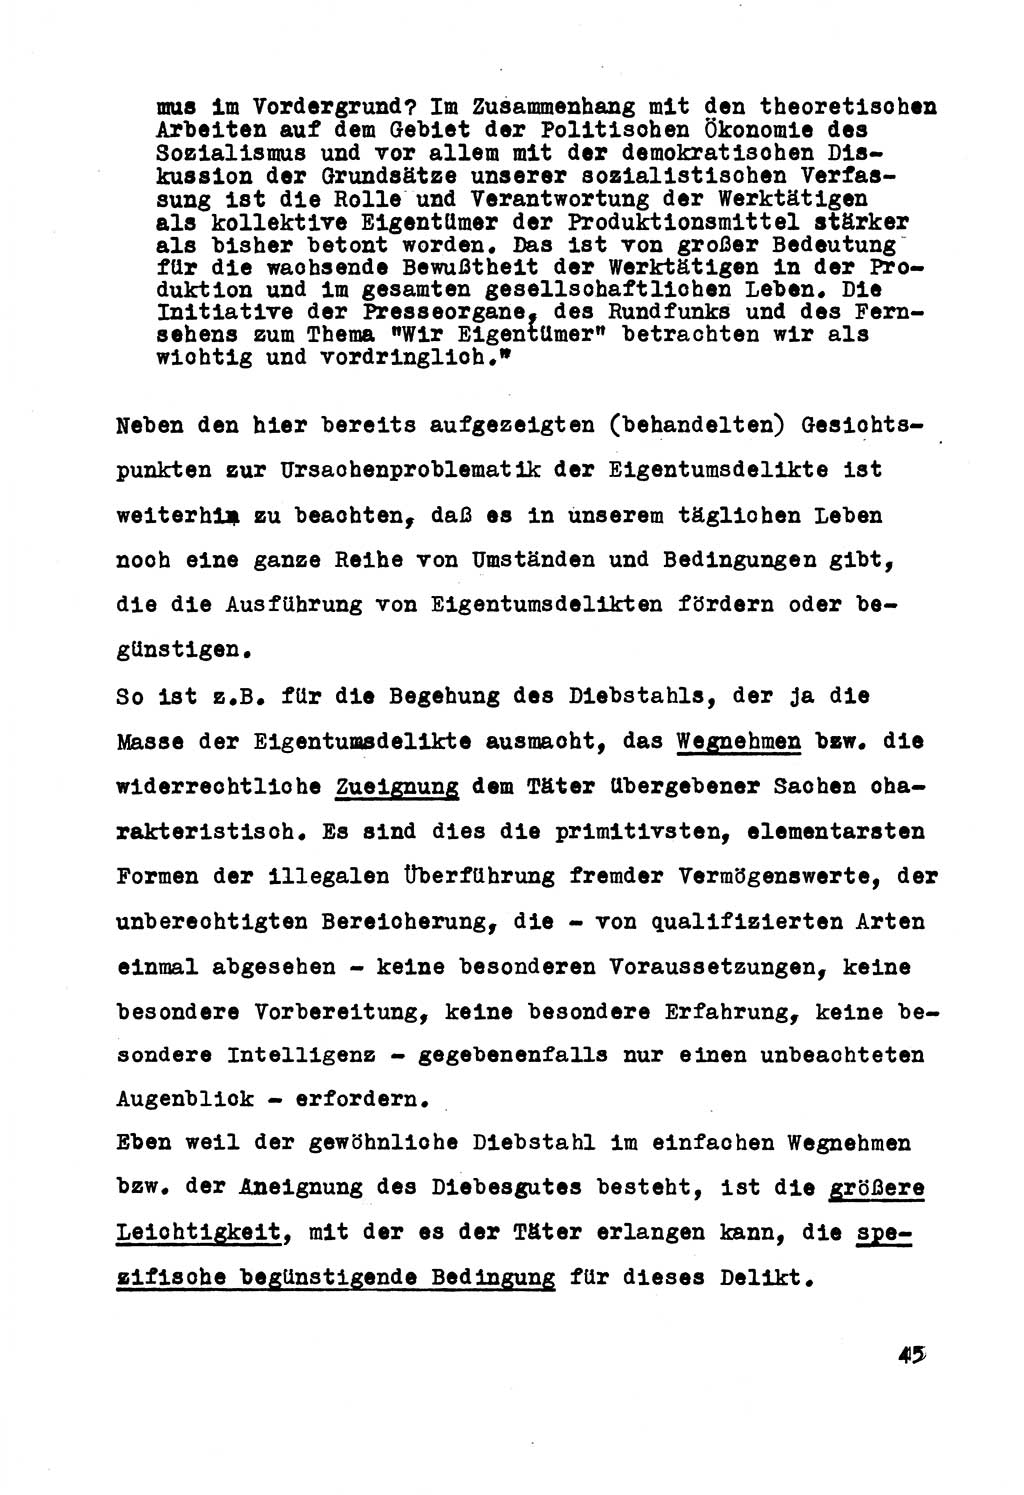 Strafrecht der DDR (Deutsche Demokratische Republik), Besonderer Teil, Lehrmaterial, Heft 5 1970, Seite 45 (Strafr. DDR BT Lehrmat. H. 5 1970, S. 45)